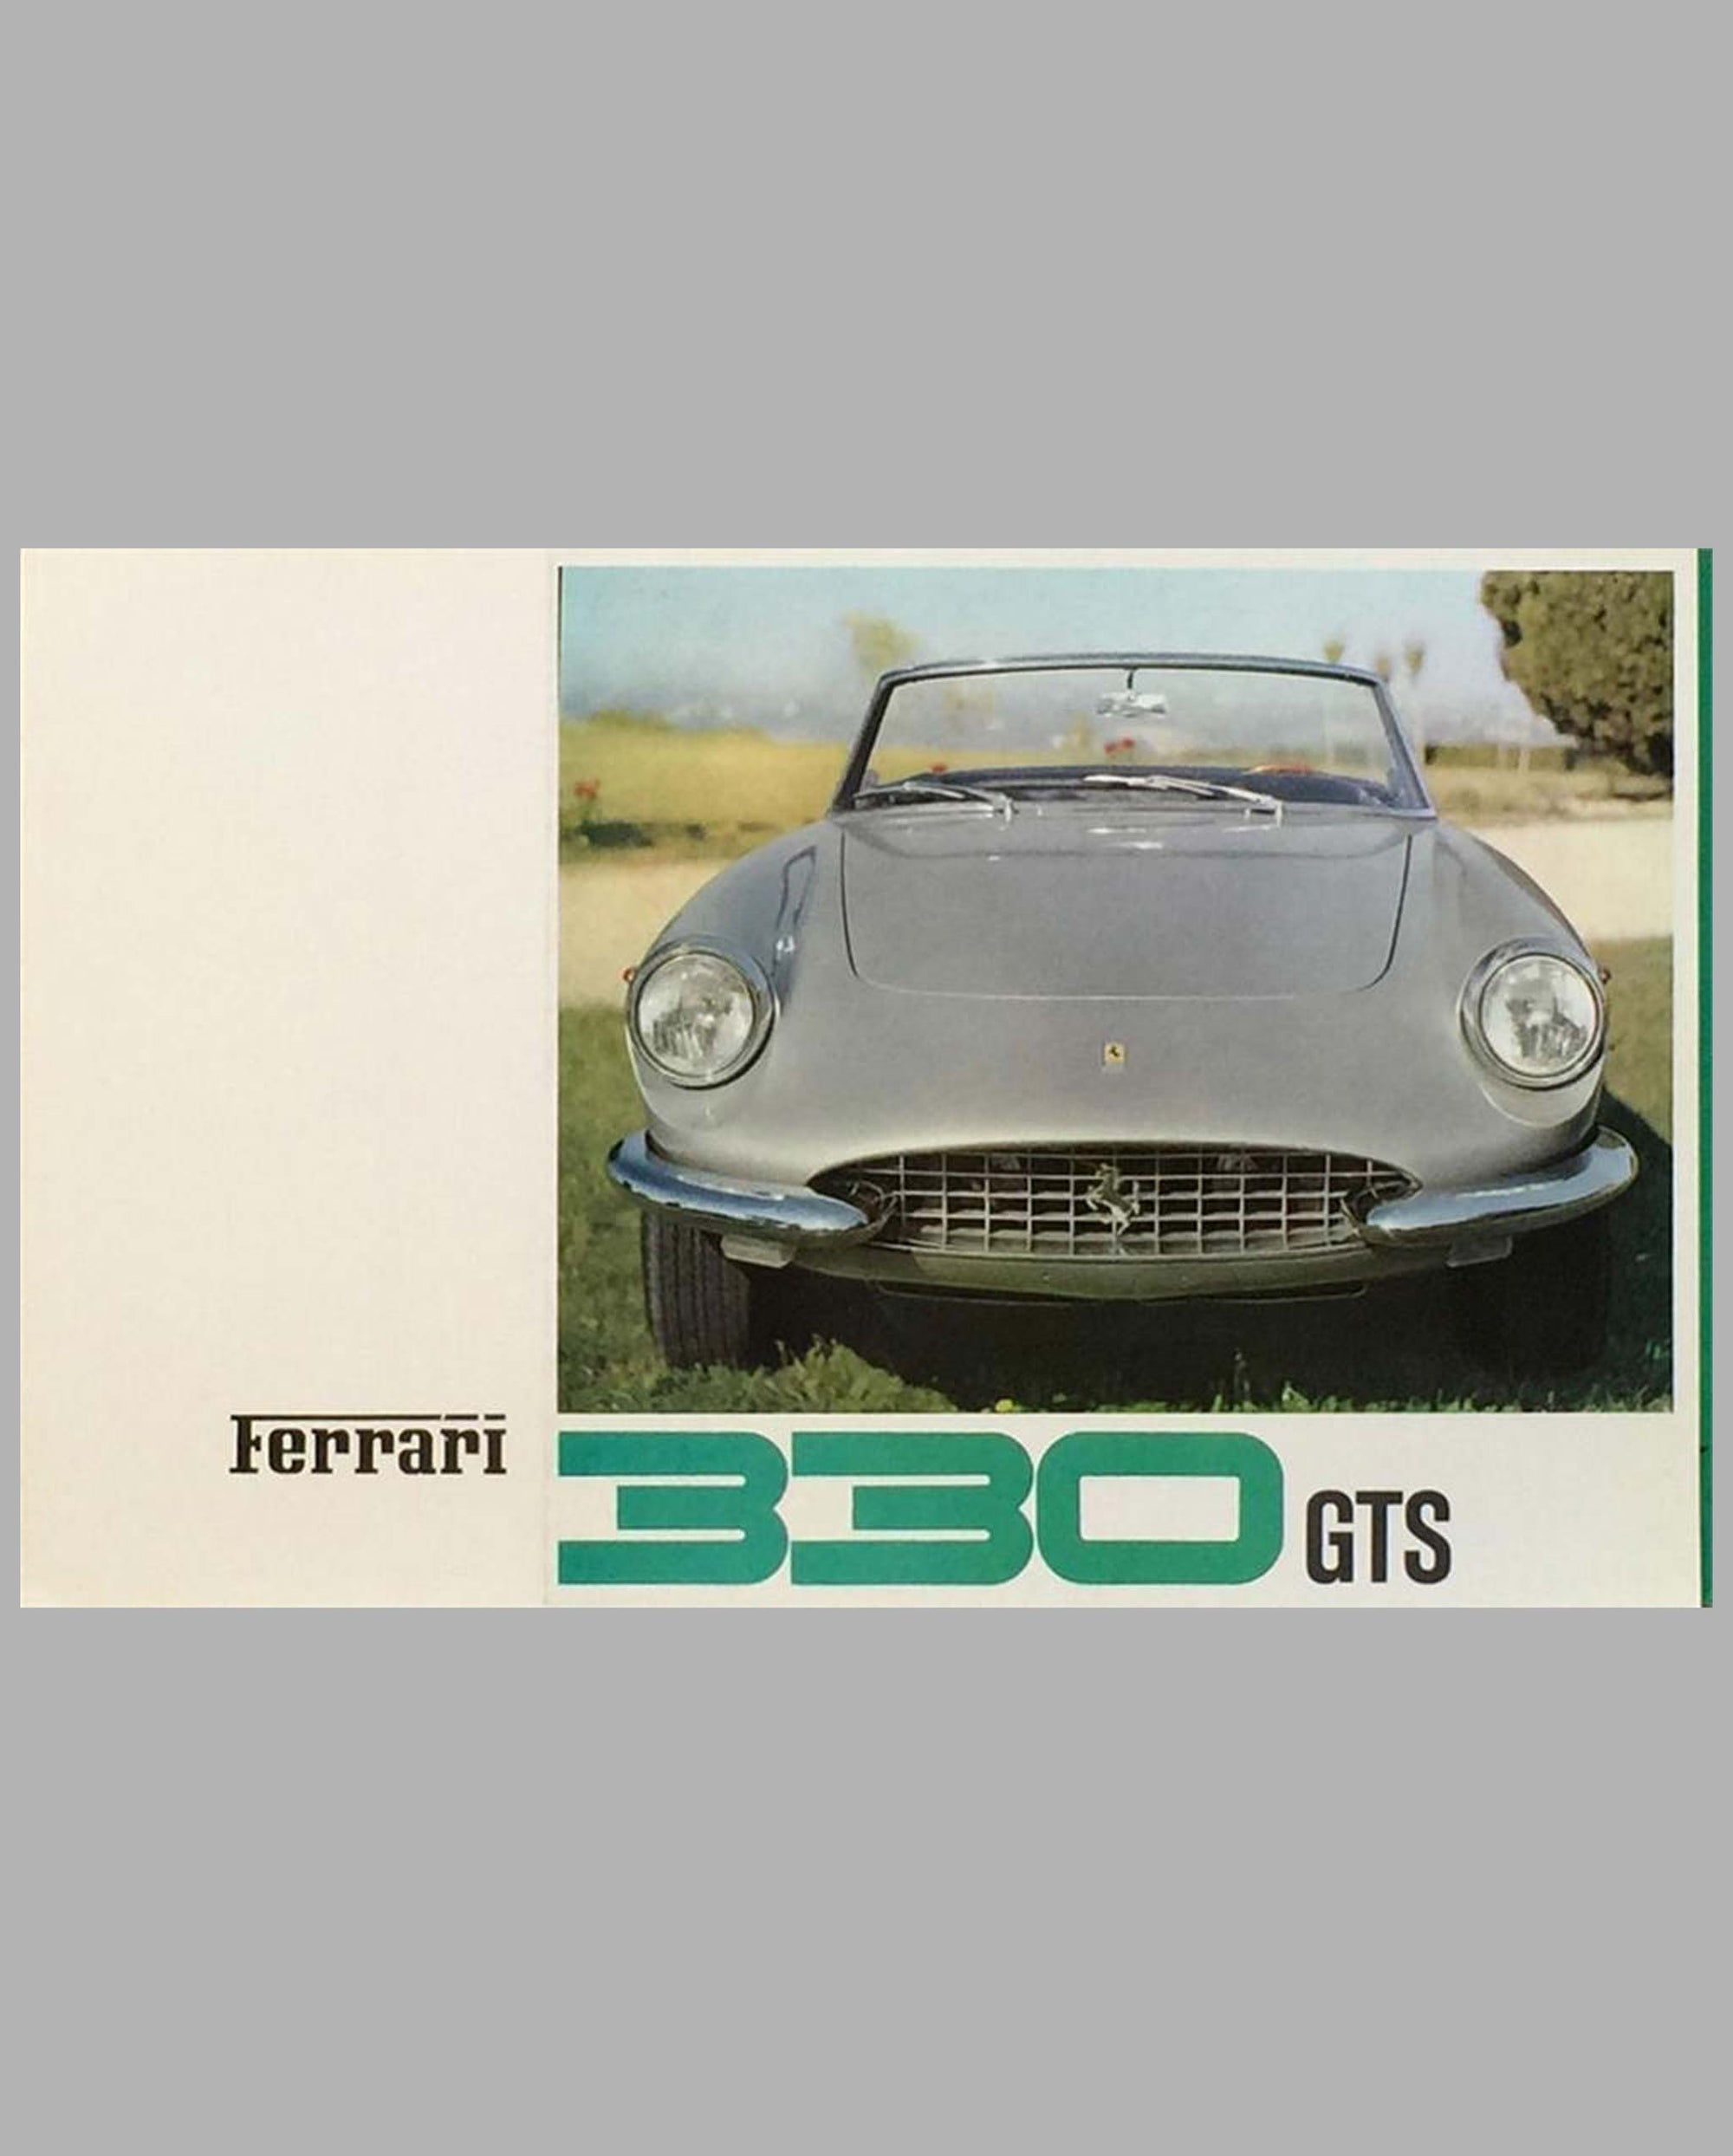 Ferrari 330 GTS original factory sales brochure